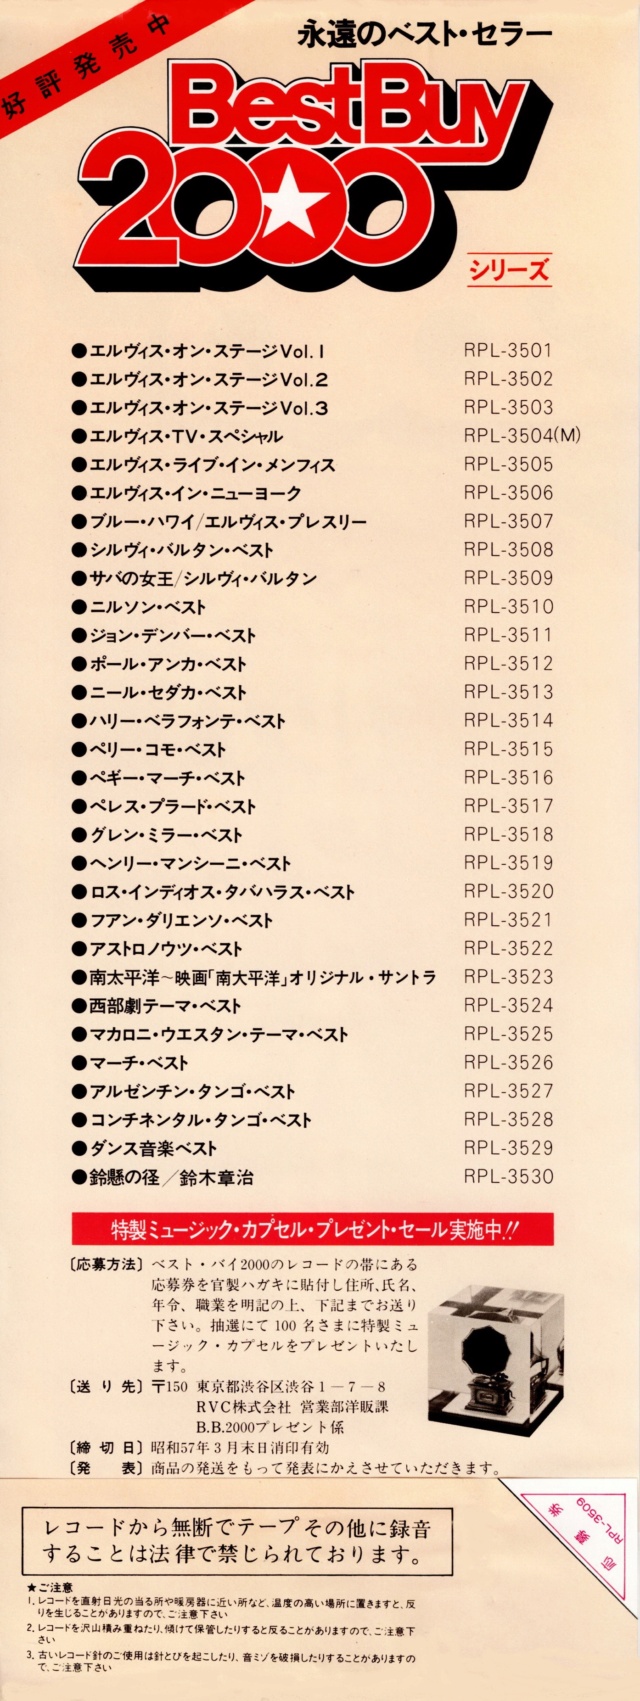 Discographie Japonaise - 4ème partie (33 T COMPILATION) - Page 16 Jpn_rp58